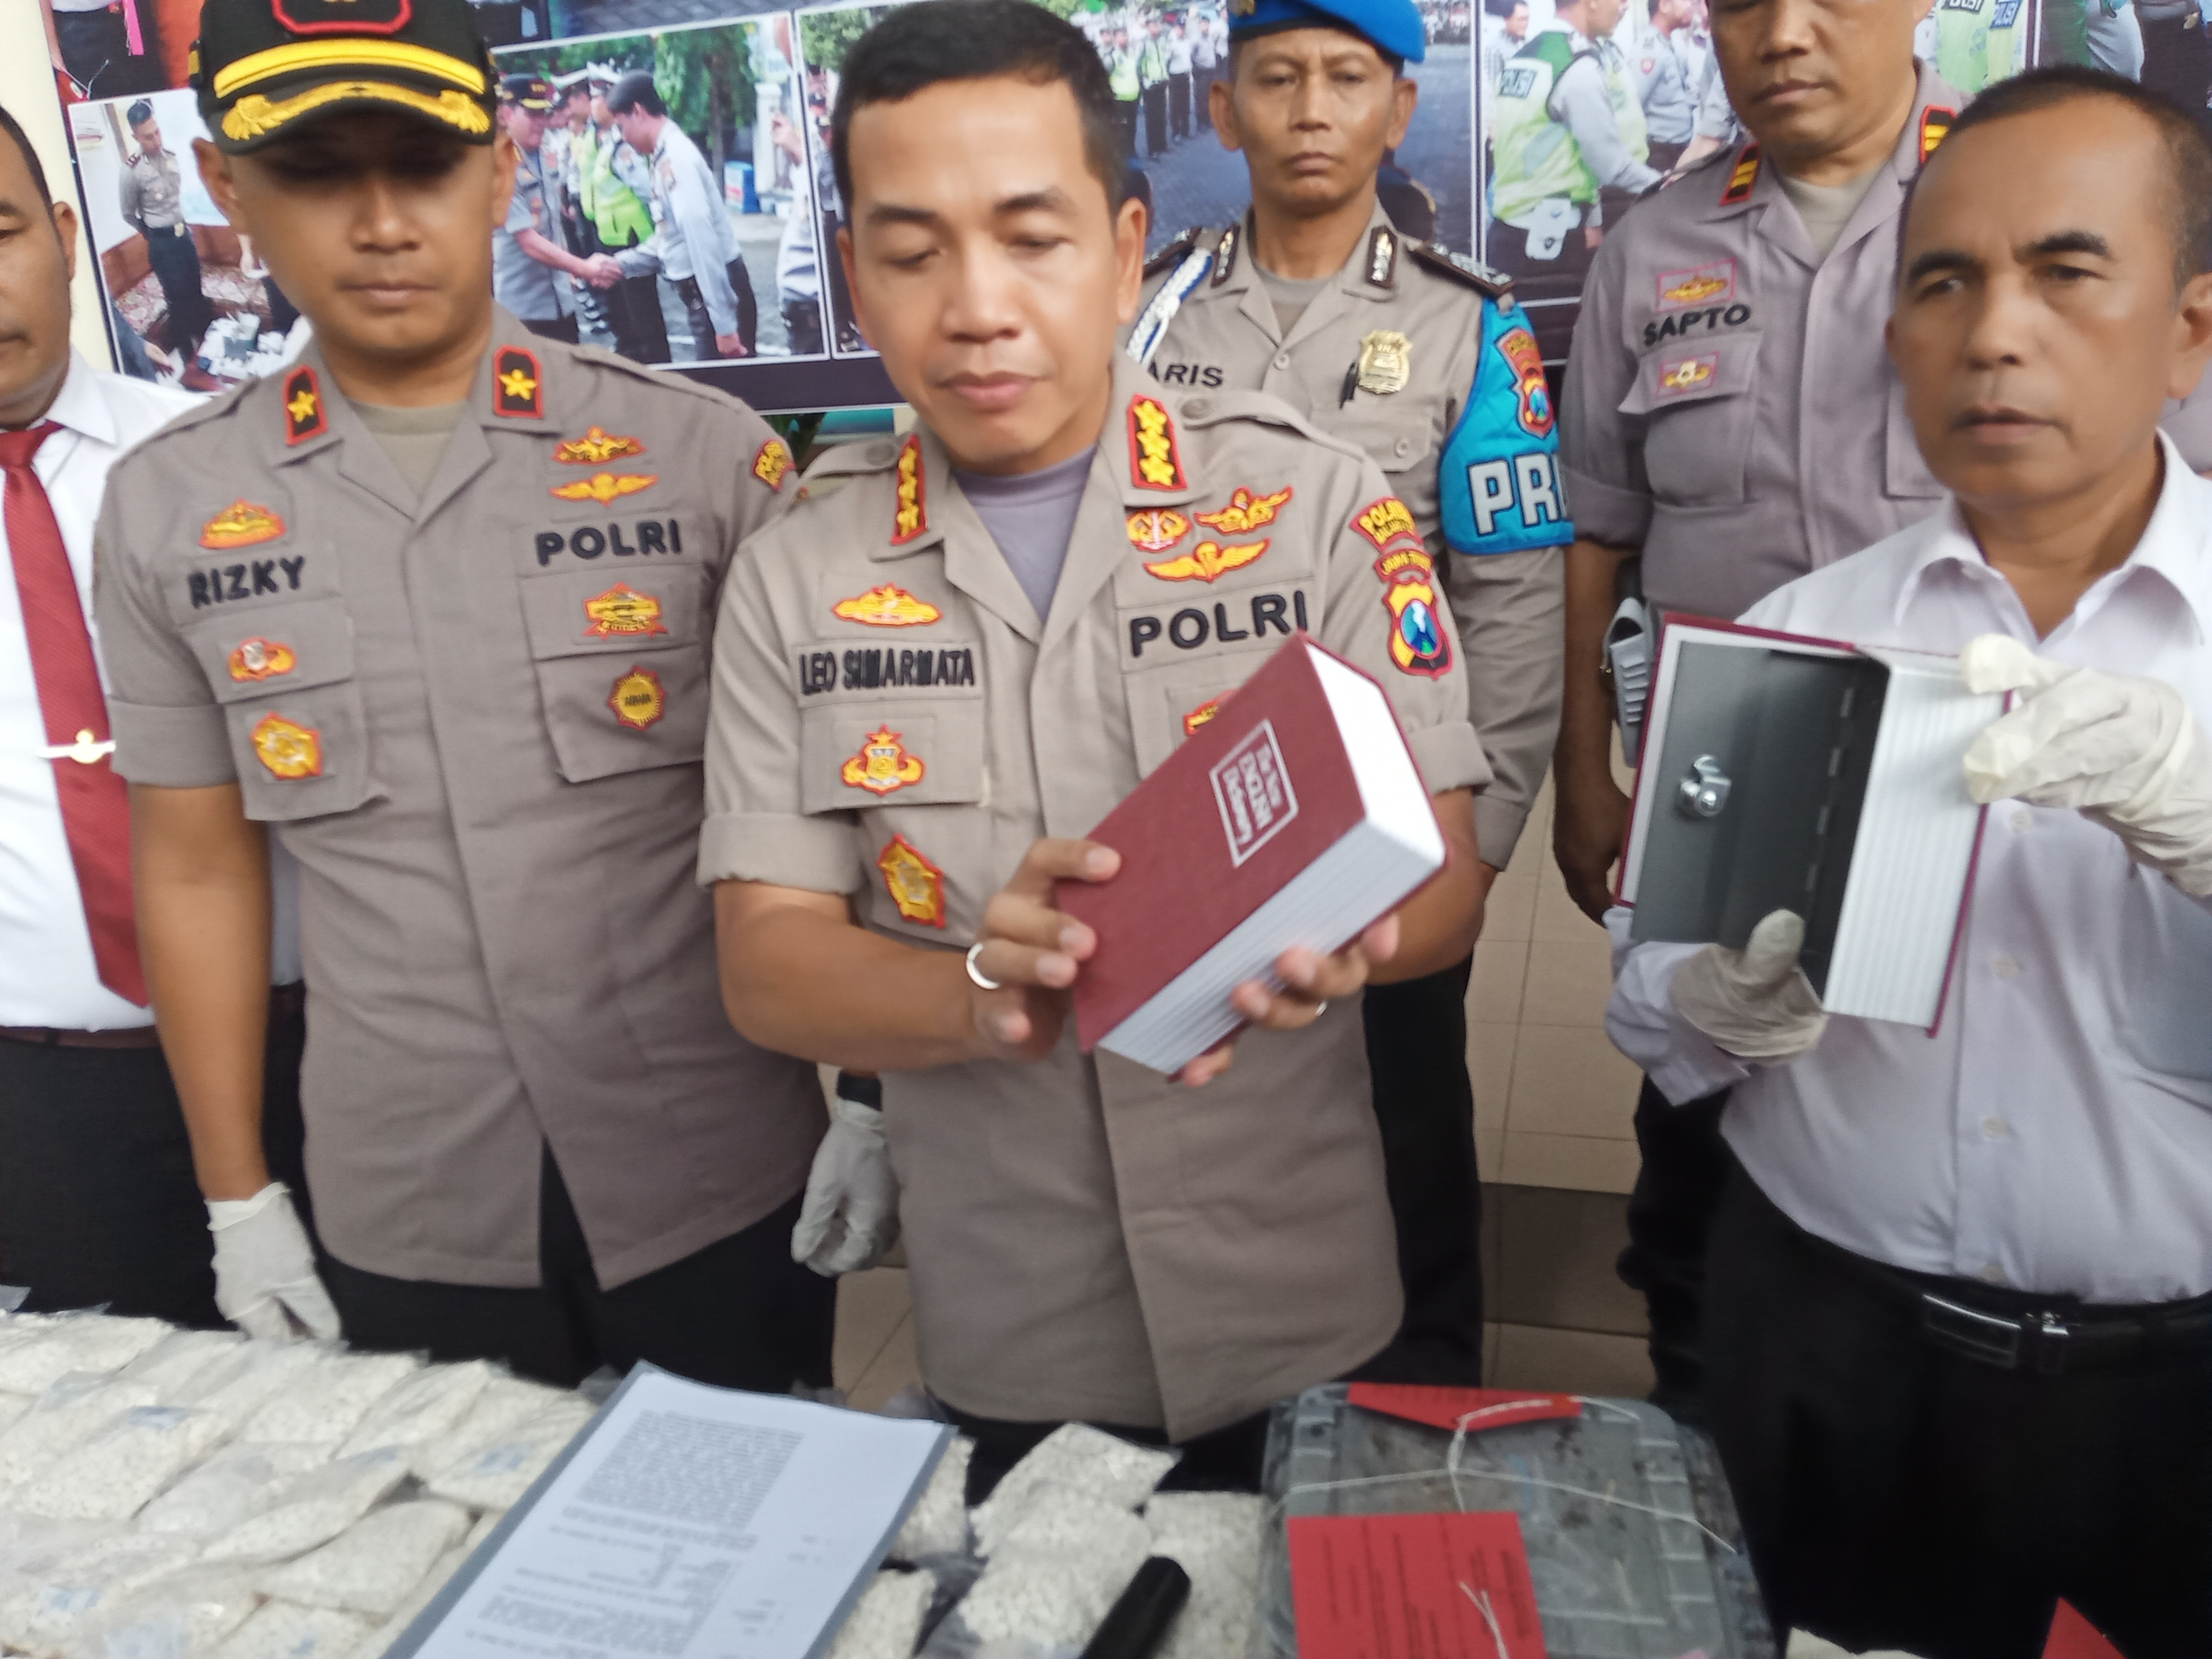 Buku kamus yang ternyata merupakan kotak penyimpanan sabu disita oleh Polresta Malang Kota (Theo/ngopibareng.id)